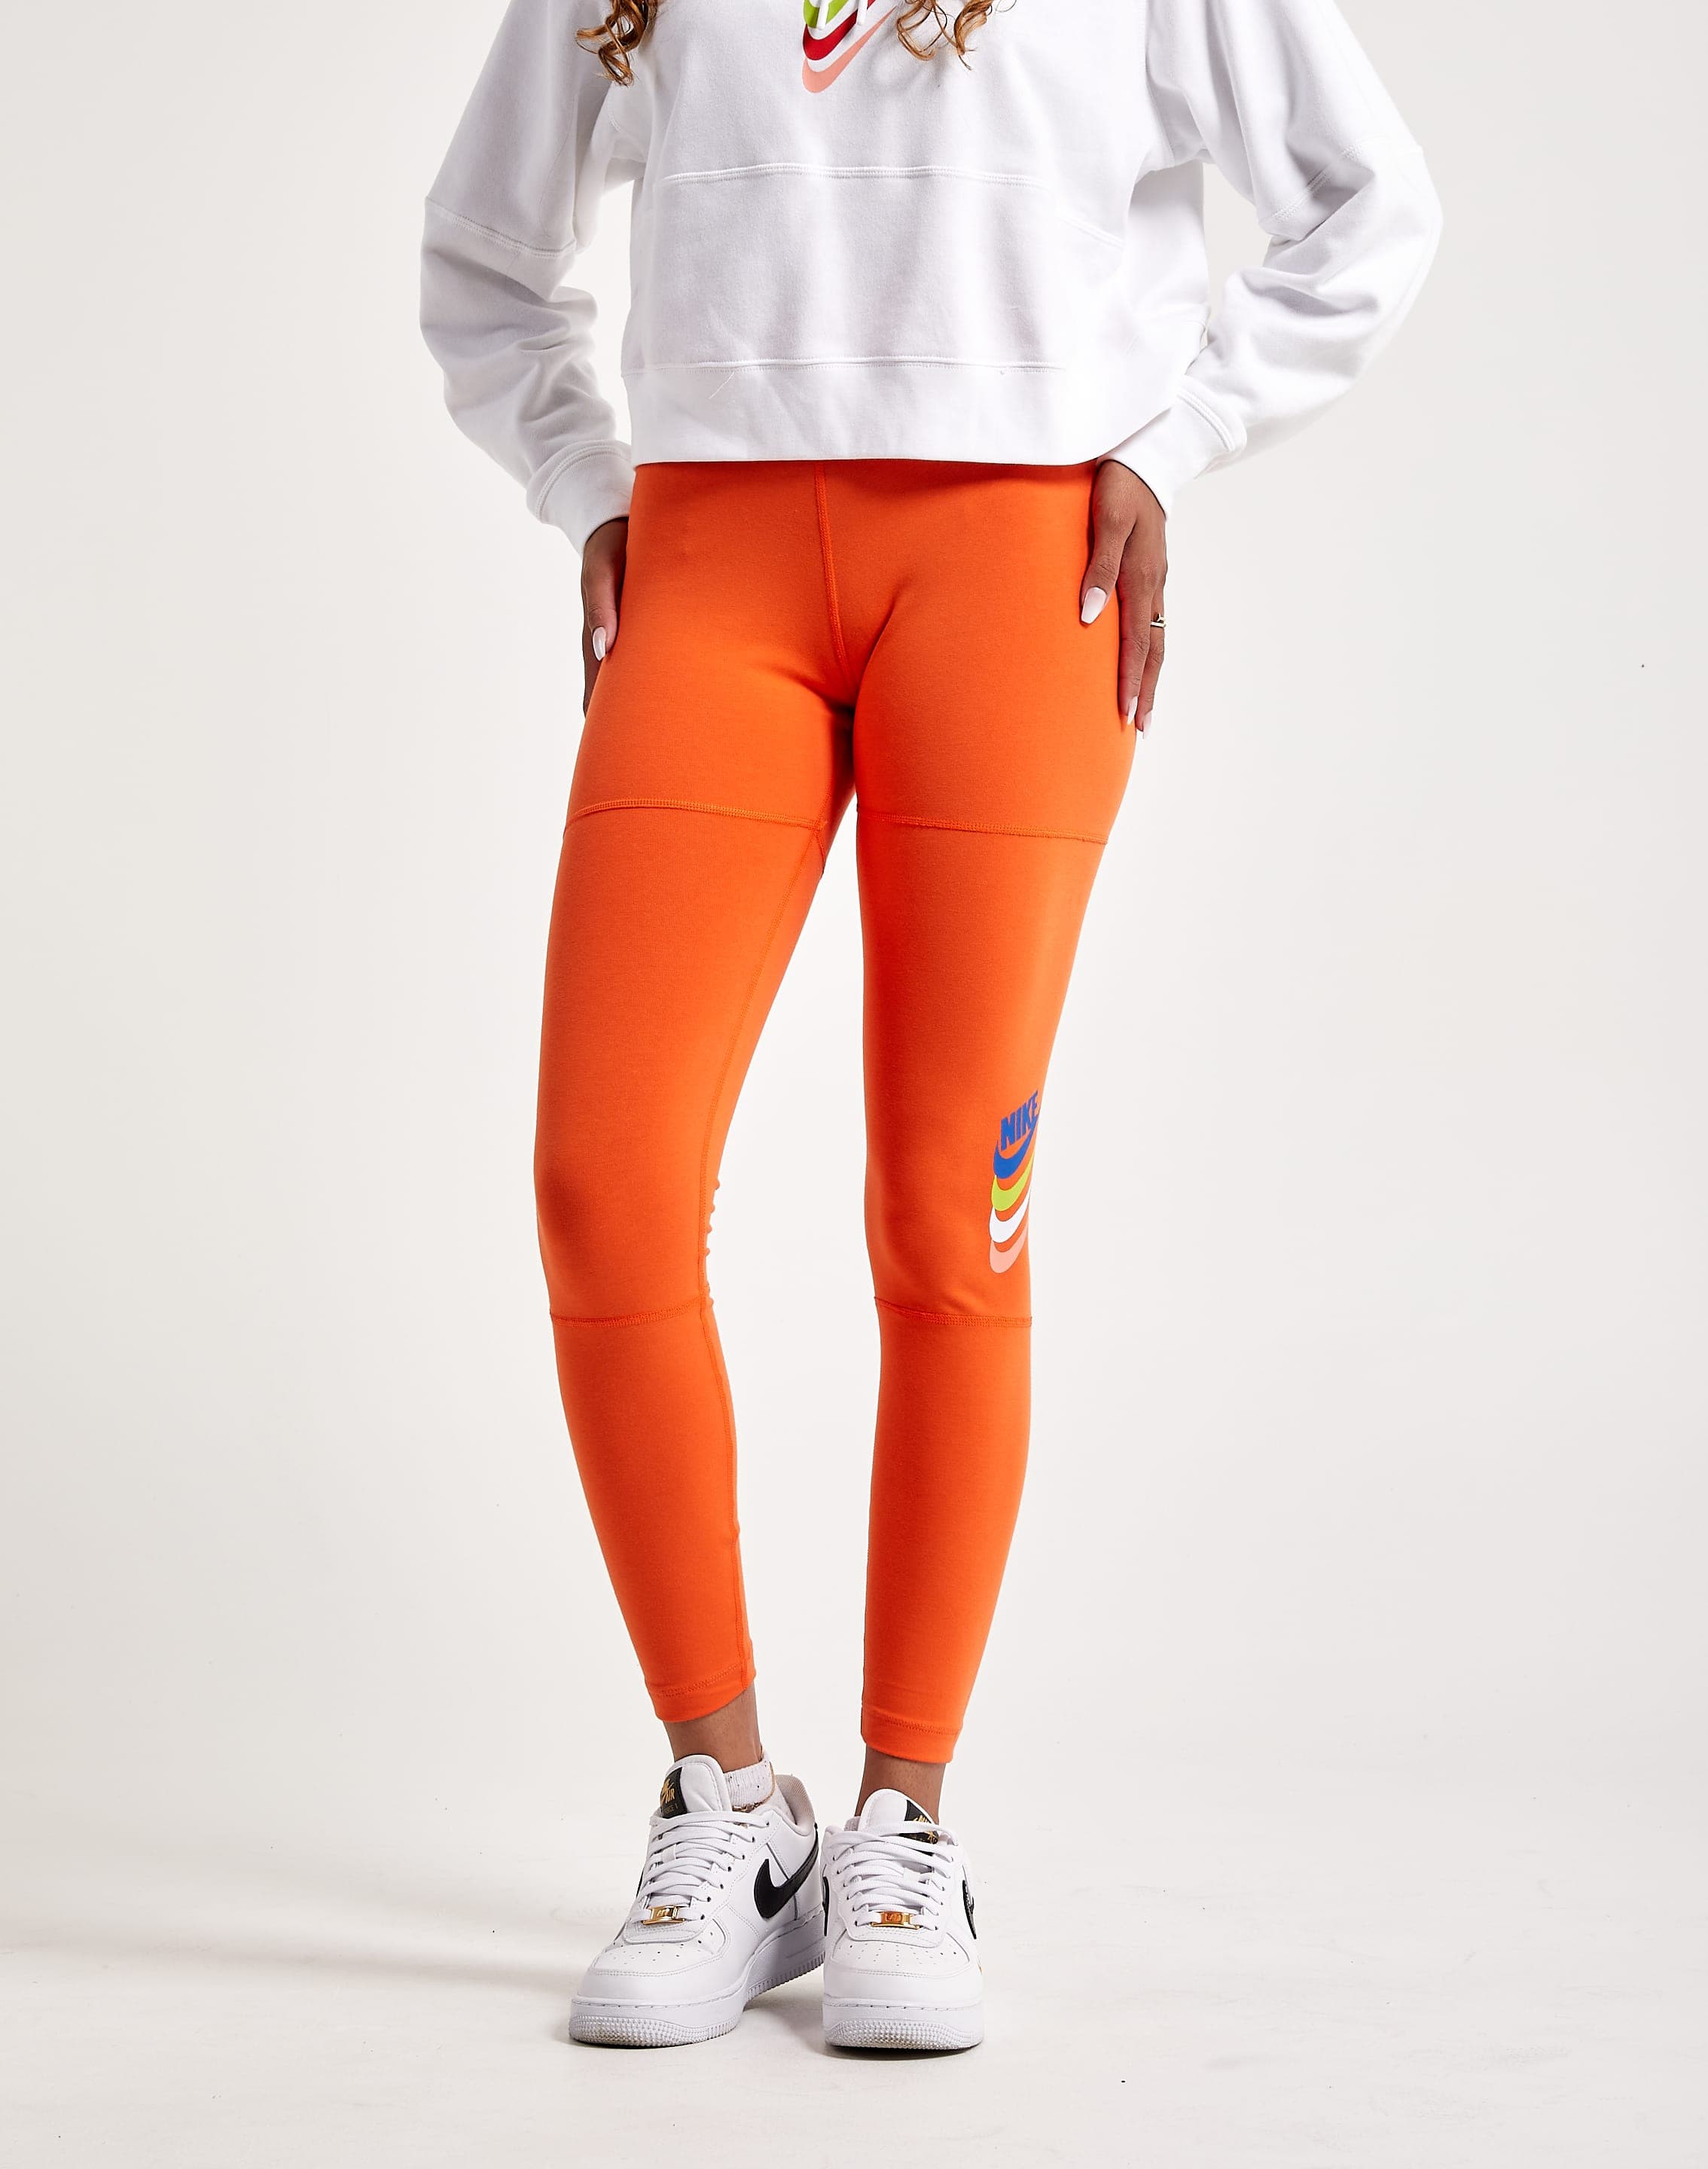 Nike Performance Leggings - rugged orange/safety orange/orange 